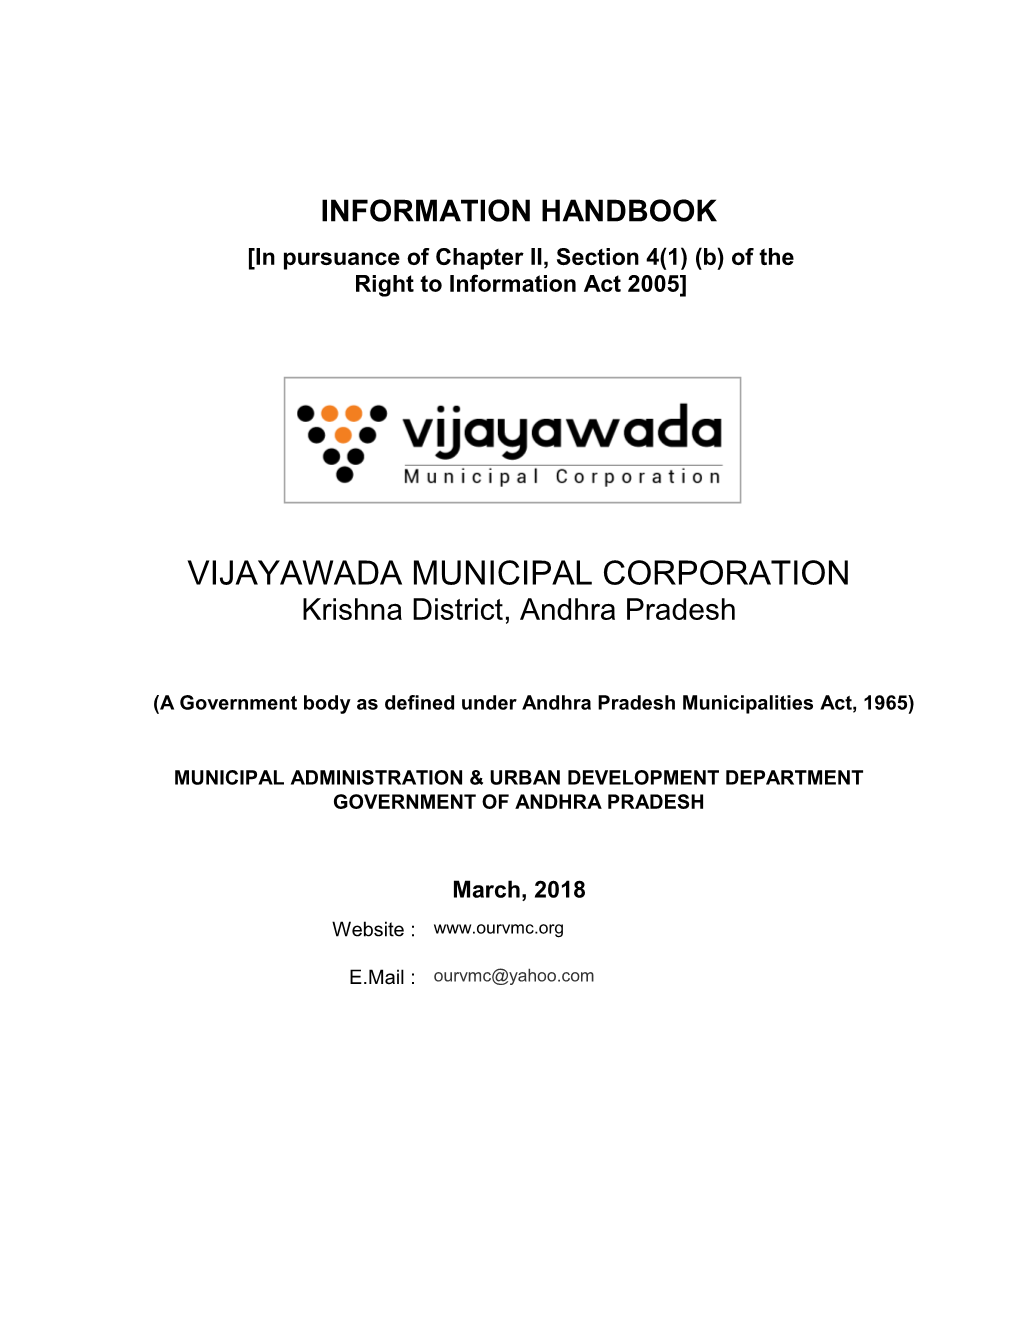 Vijayawada Municipal Corporation HAND BOOK-2018